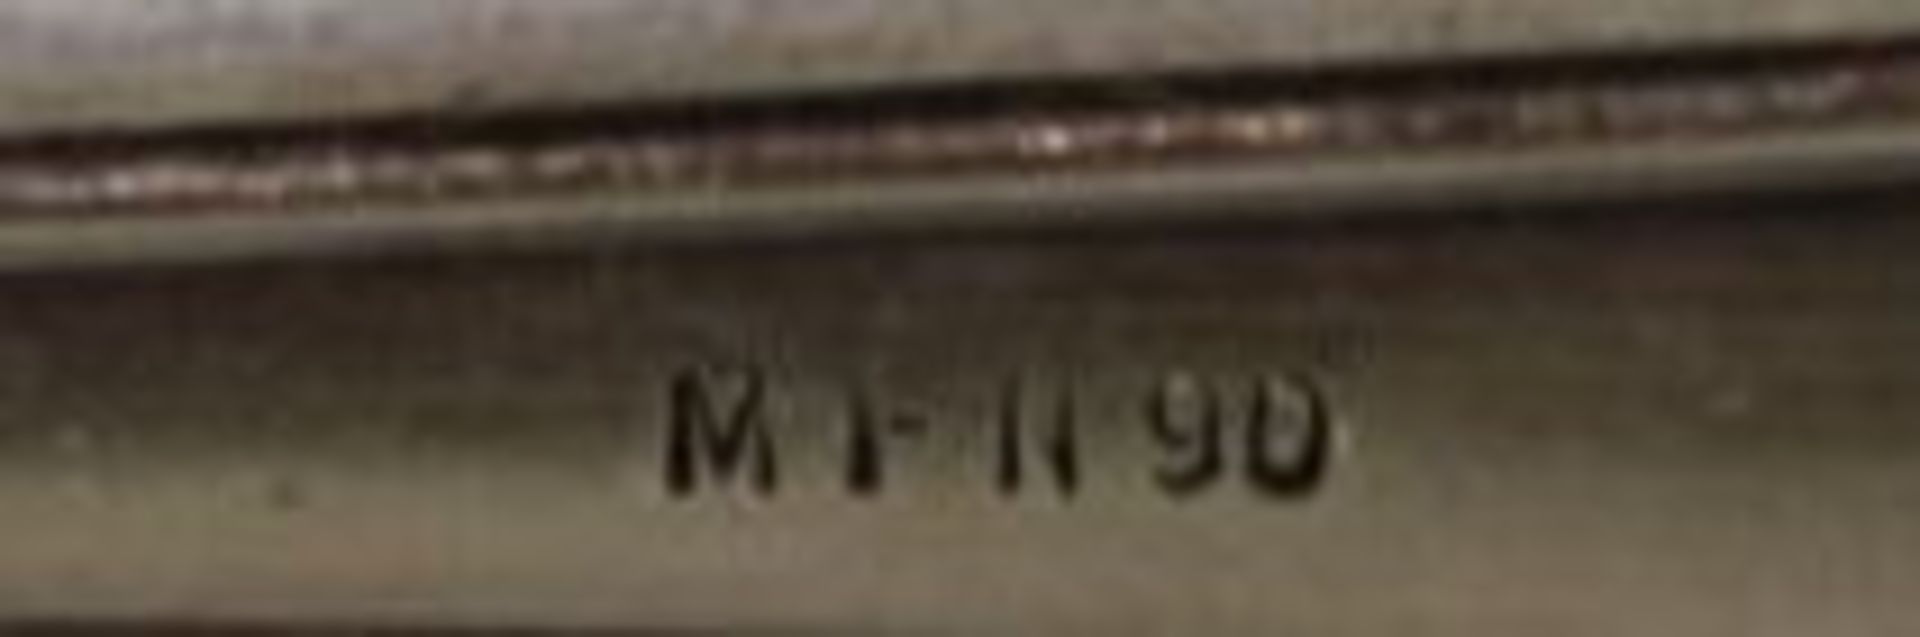 6x Kuchengabeln, W.M.F.N., 90er Auflage, L-14cm.- - -22.61 % buyer's premium on the hammer - Bild 2 aus 2